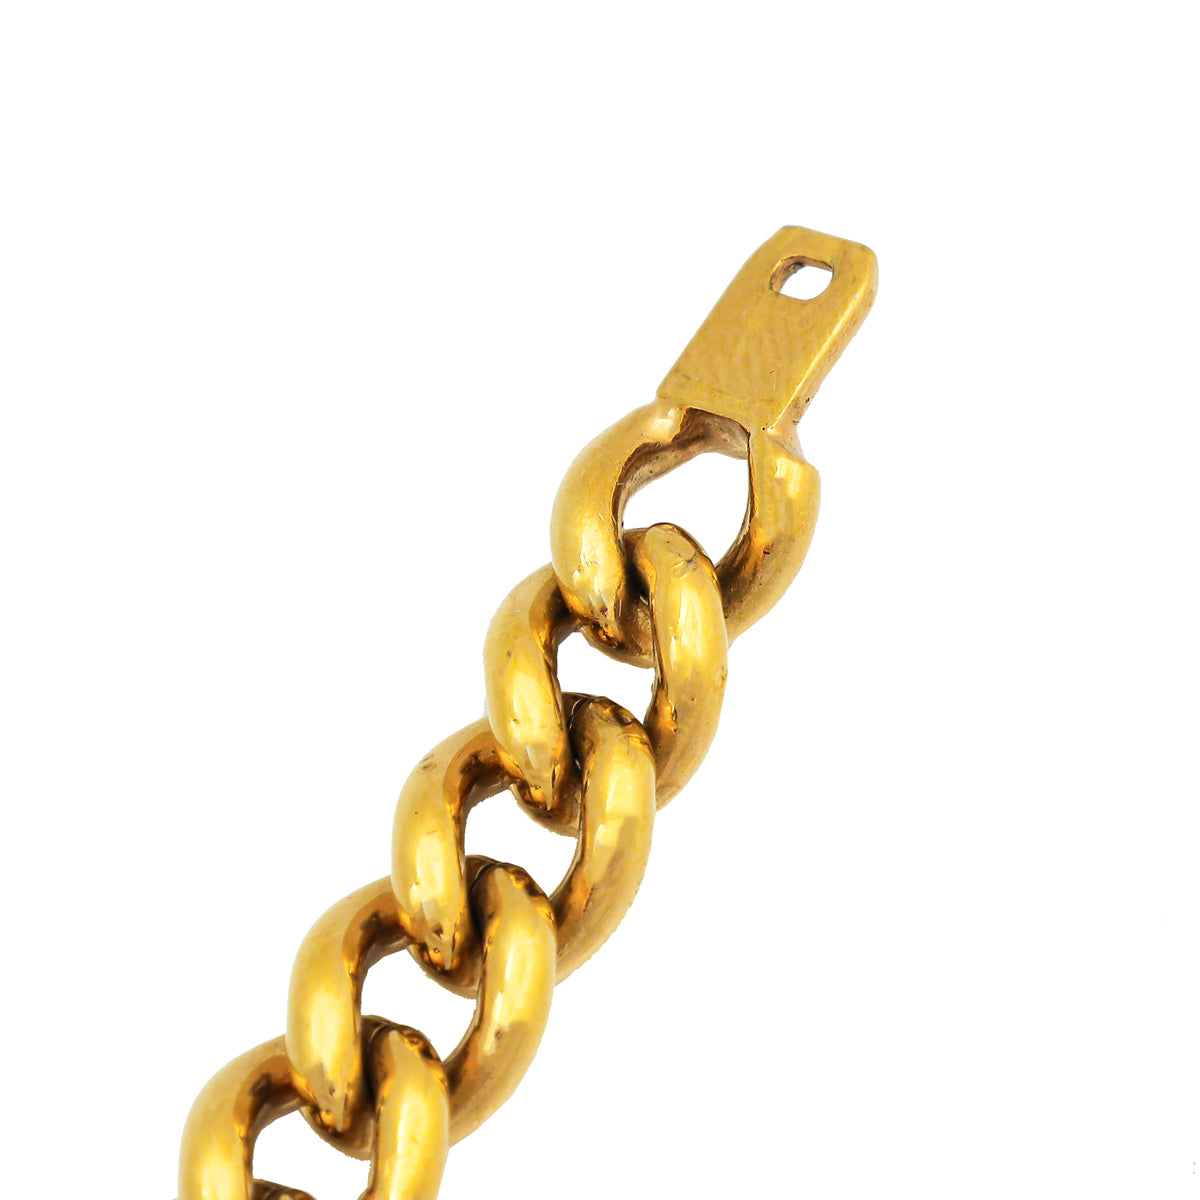 Louis Vuitton Gold Chainlink ID Bracelet